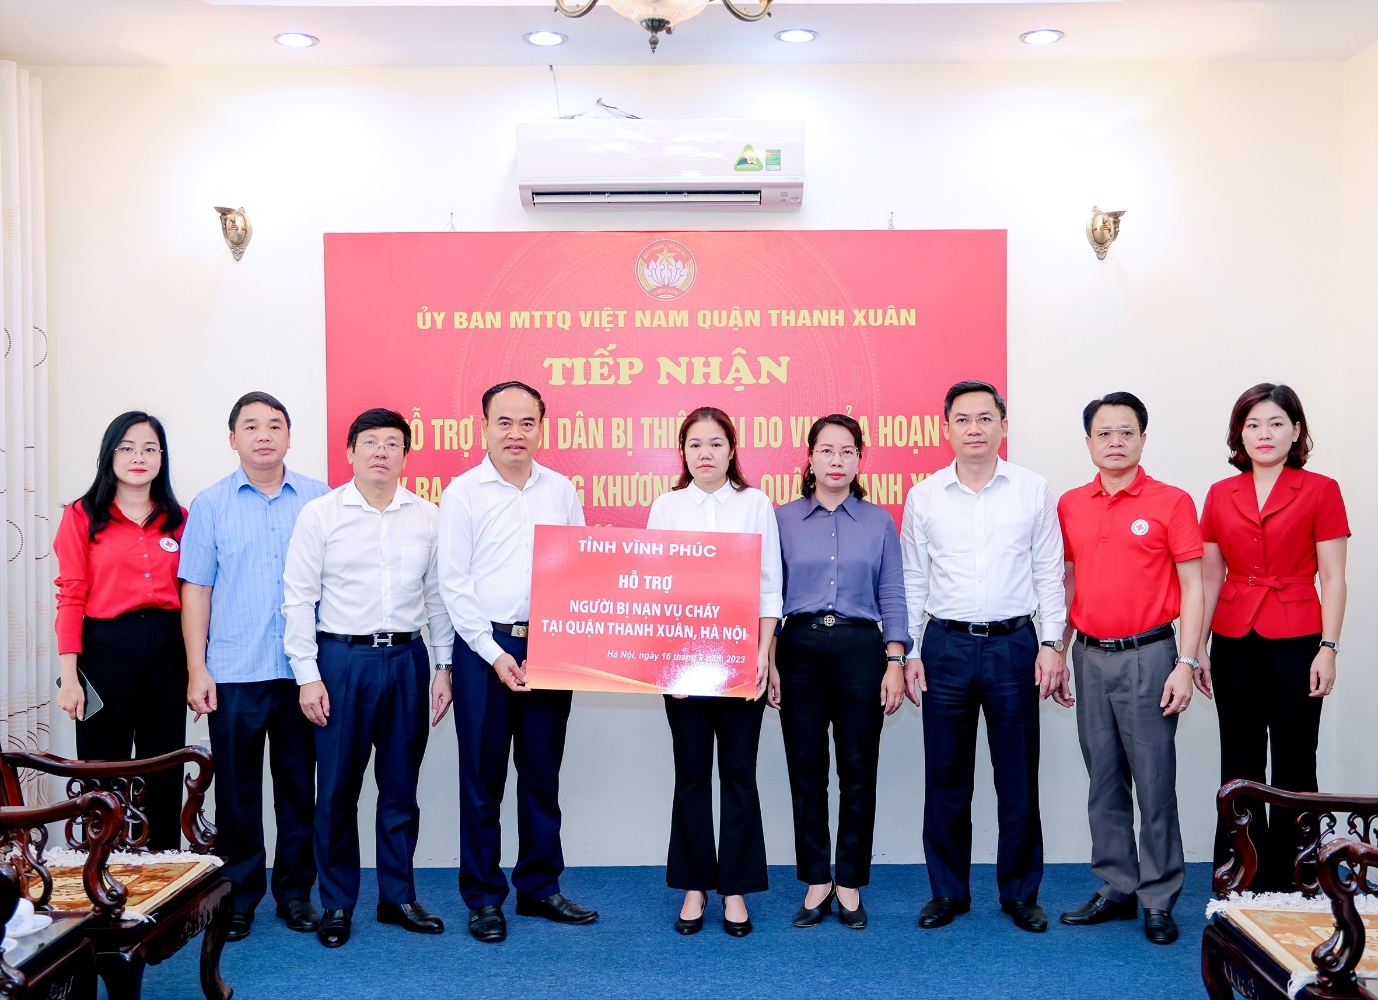 Tỉnh Vĩnh Phúc trao tiền hỗ cho người bị nạn trong vụ cháy tại quận Thanh Xuân, thành phố Hà Nội